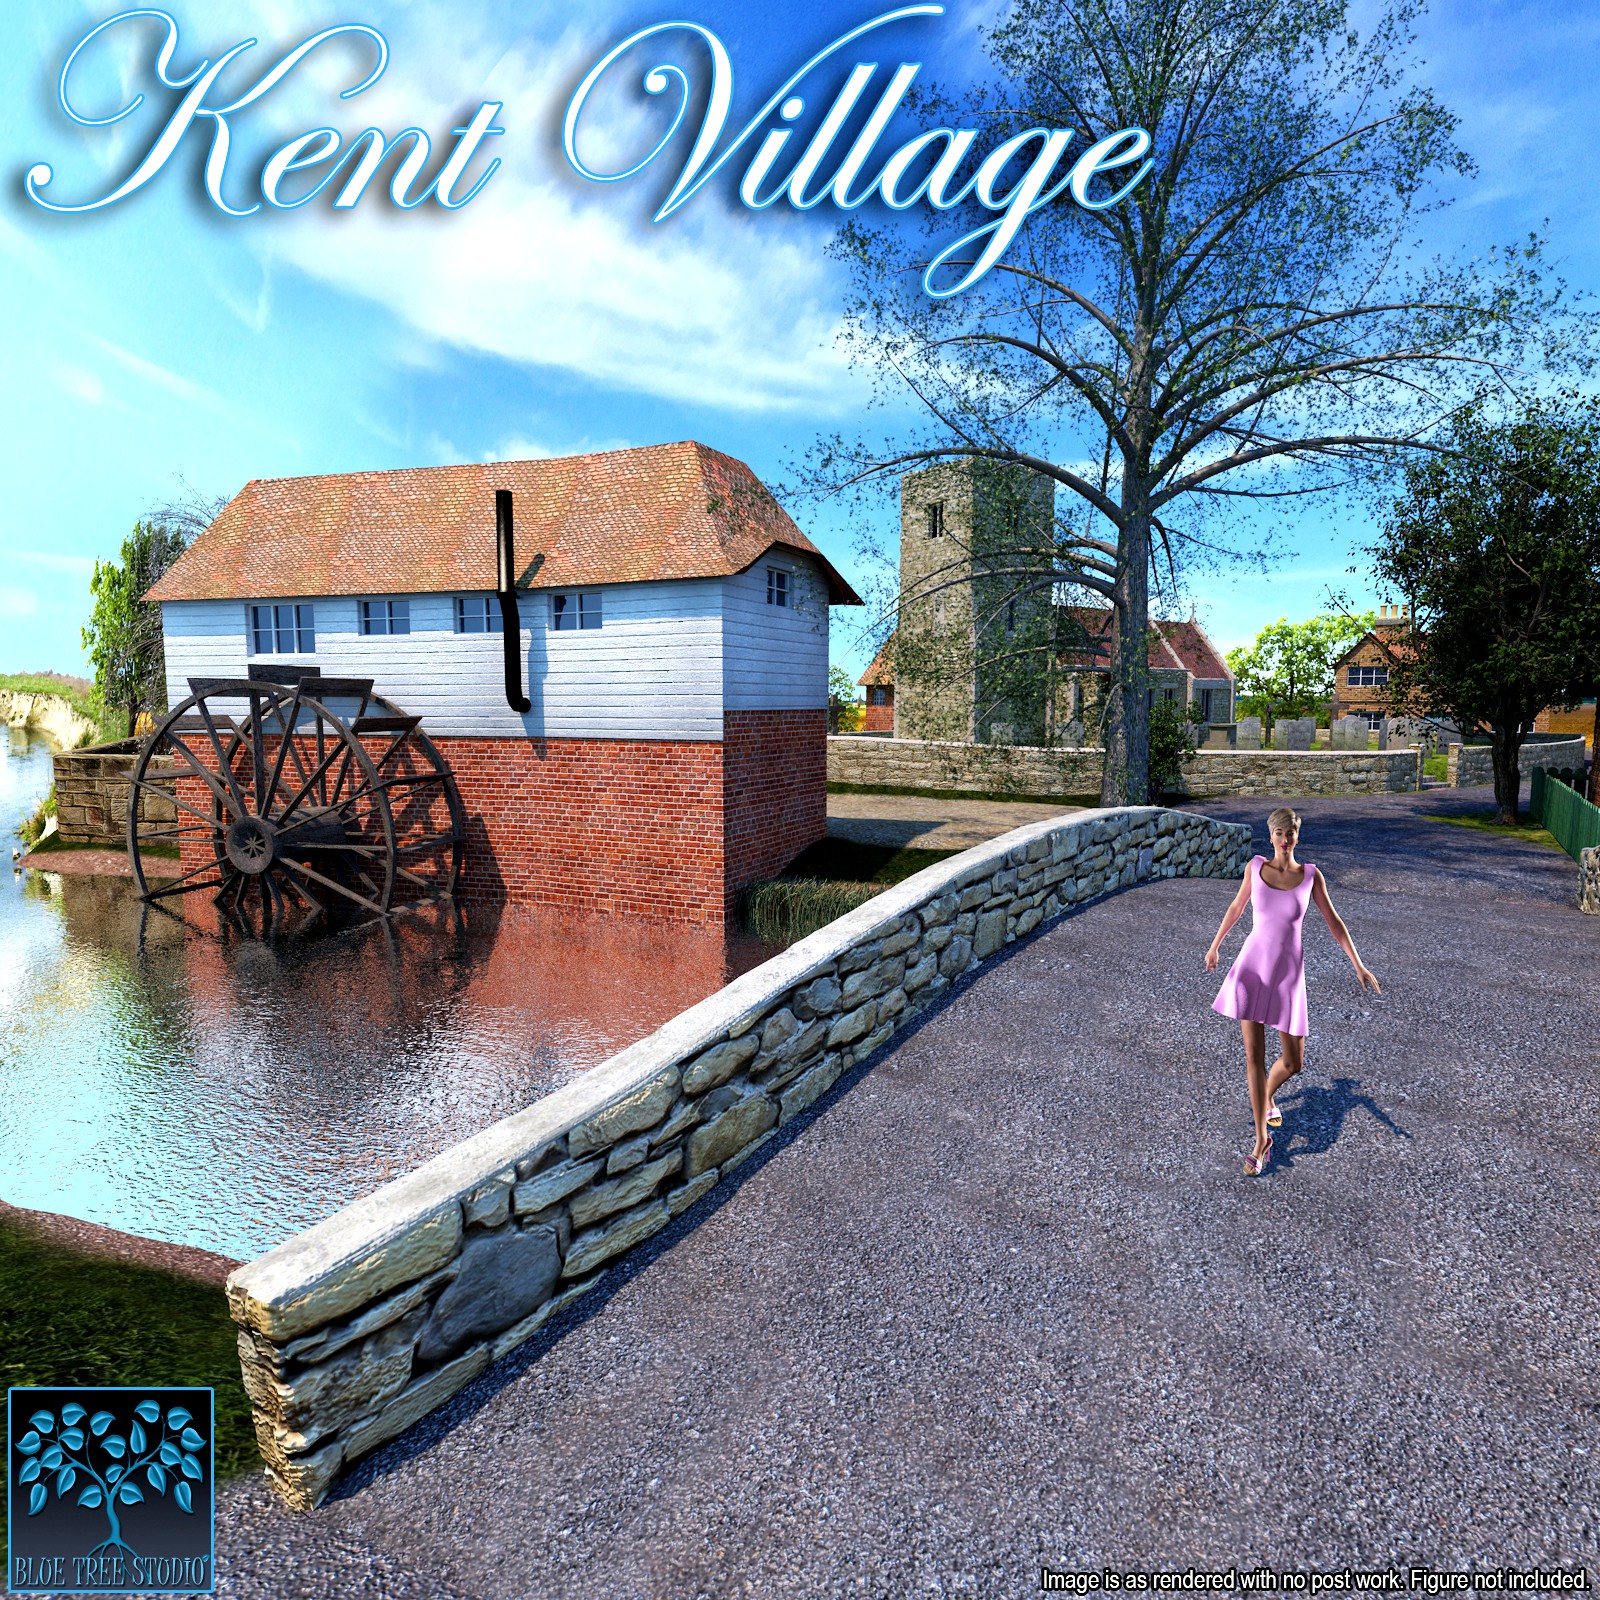 Kent Village